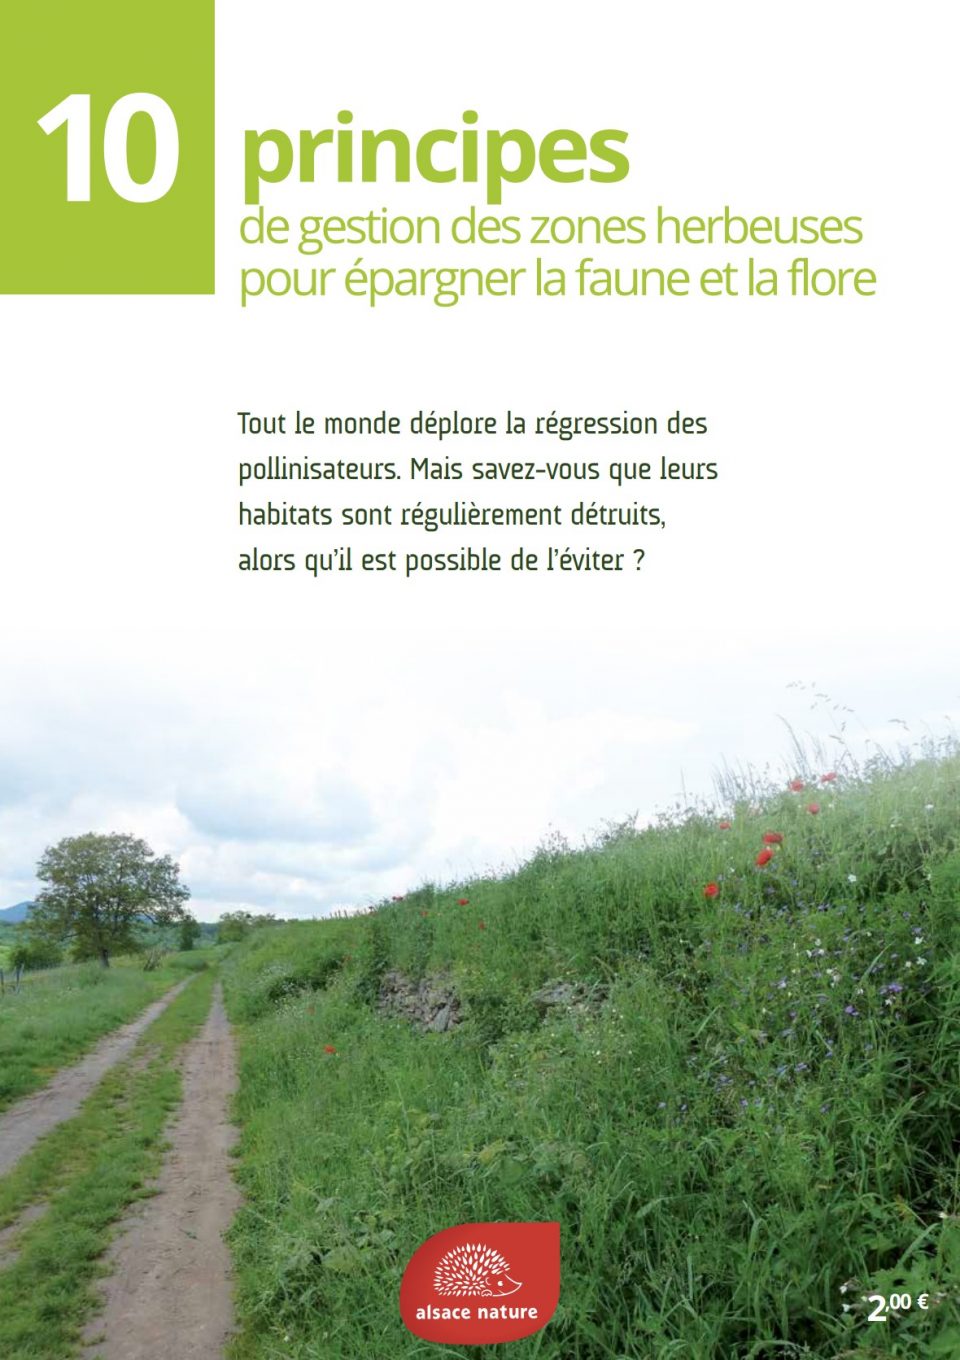 10 principes de gestion des zones herbeuses pour épargner la faune et la flore